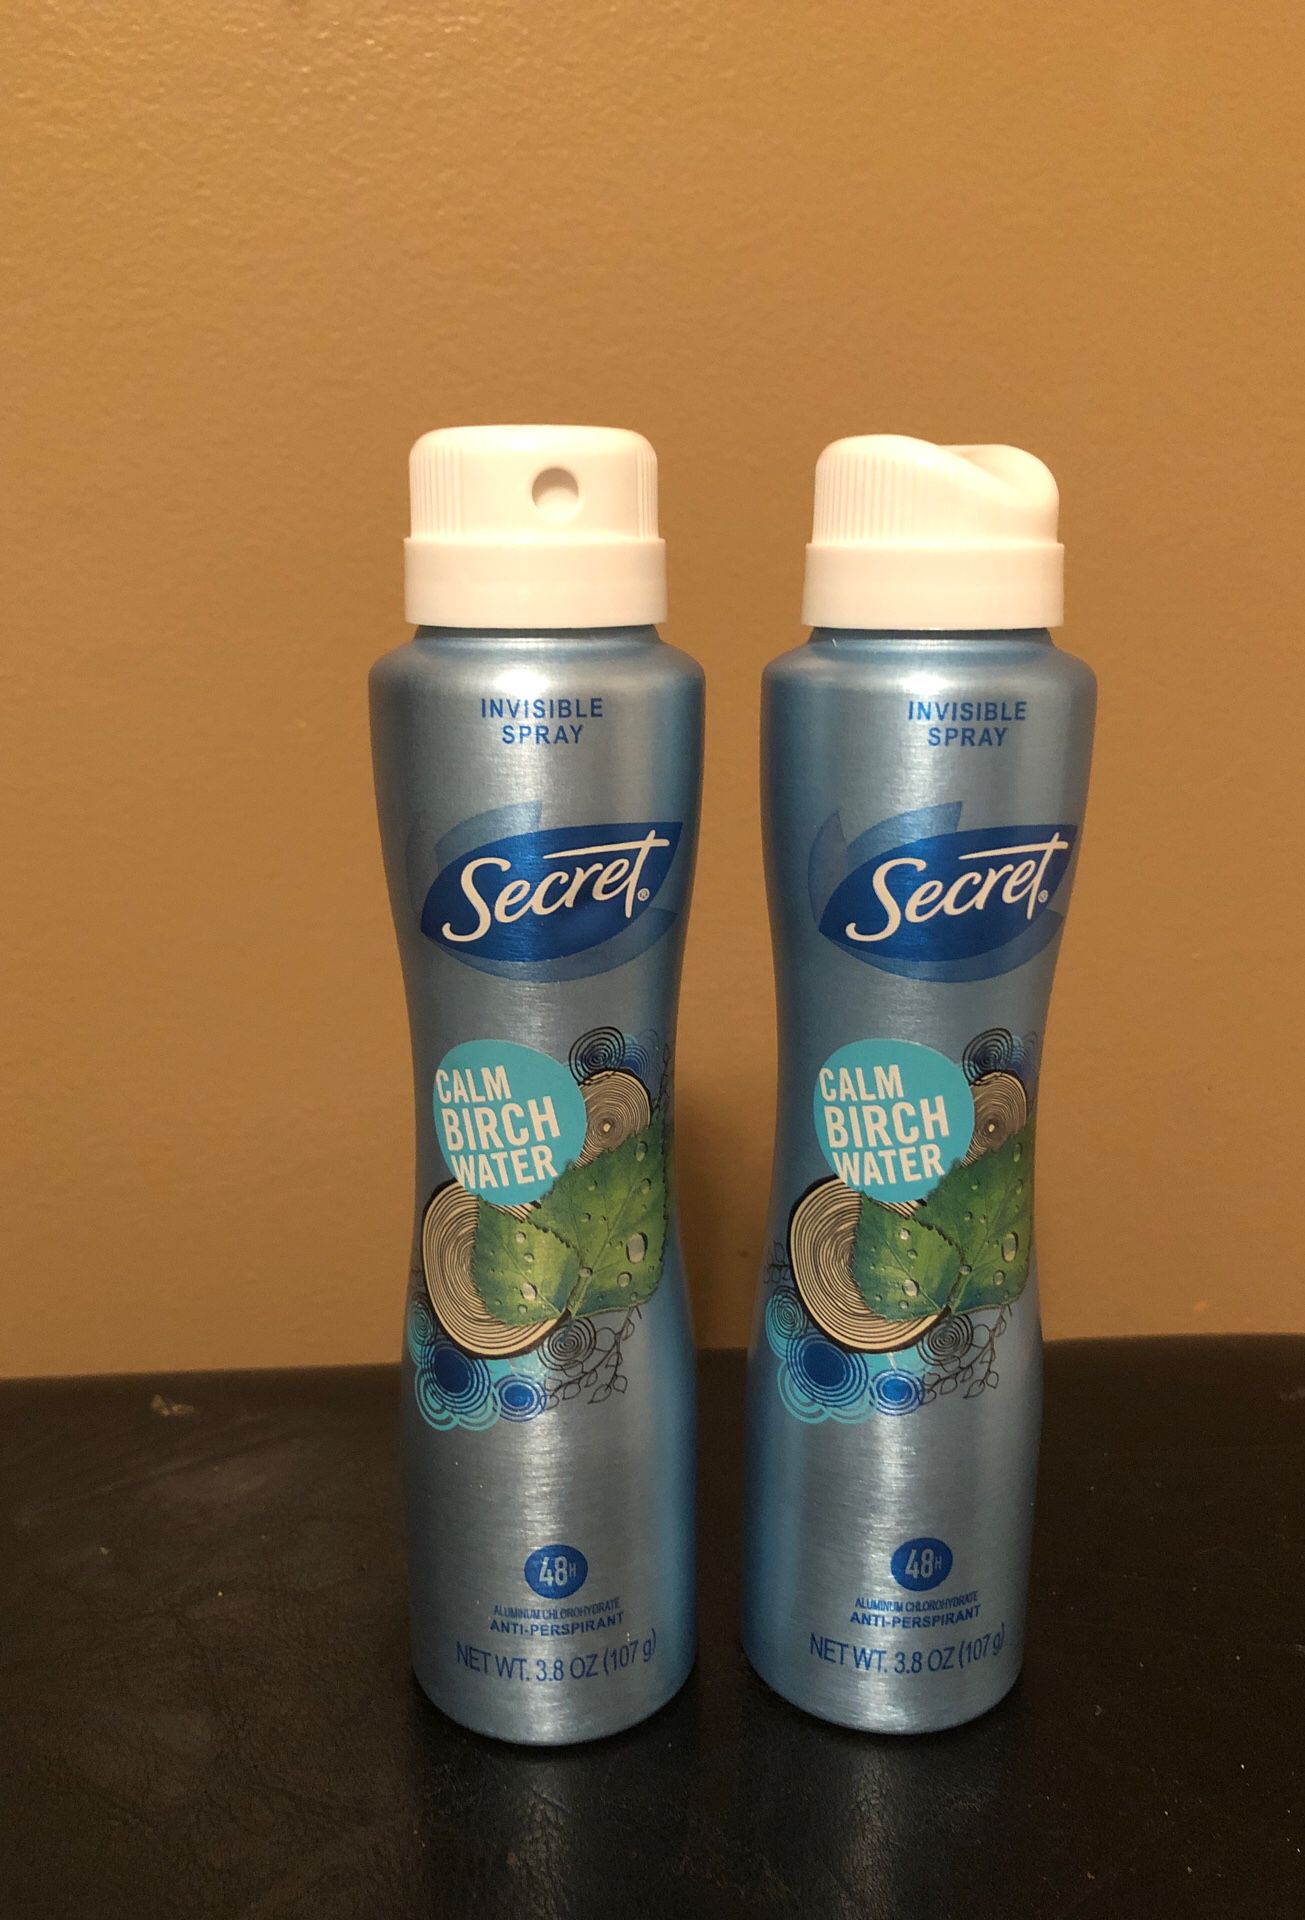 2 Secret invisible spray